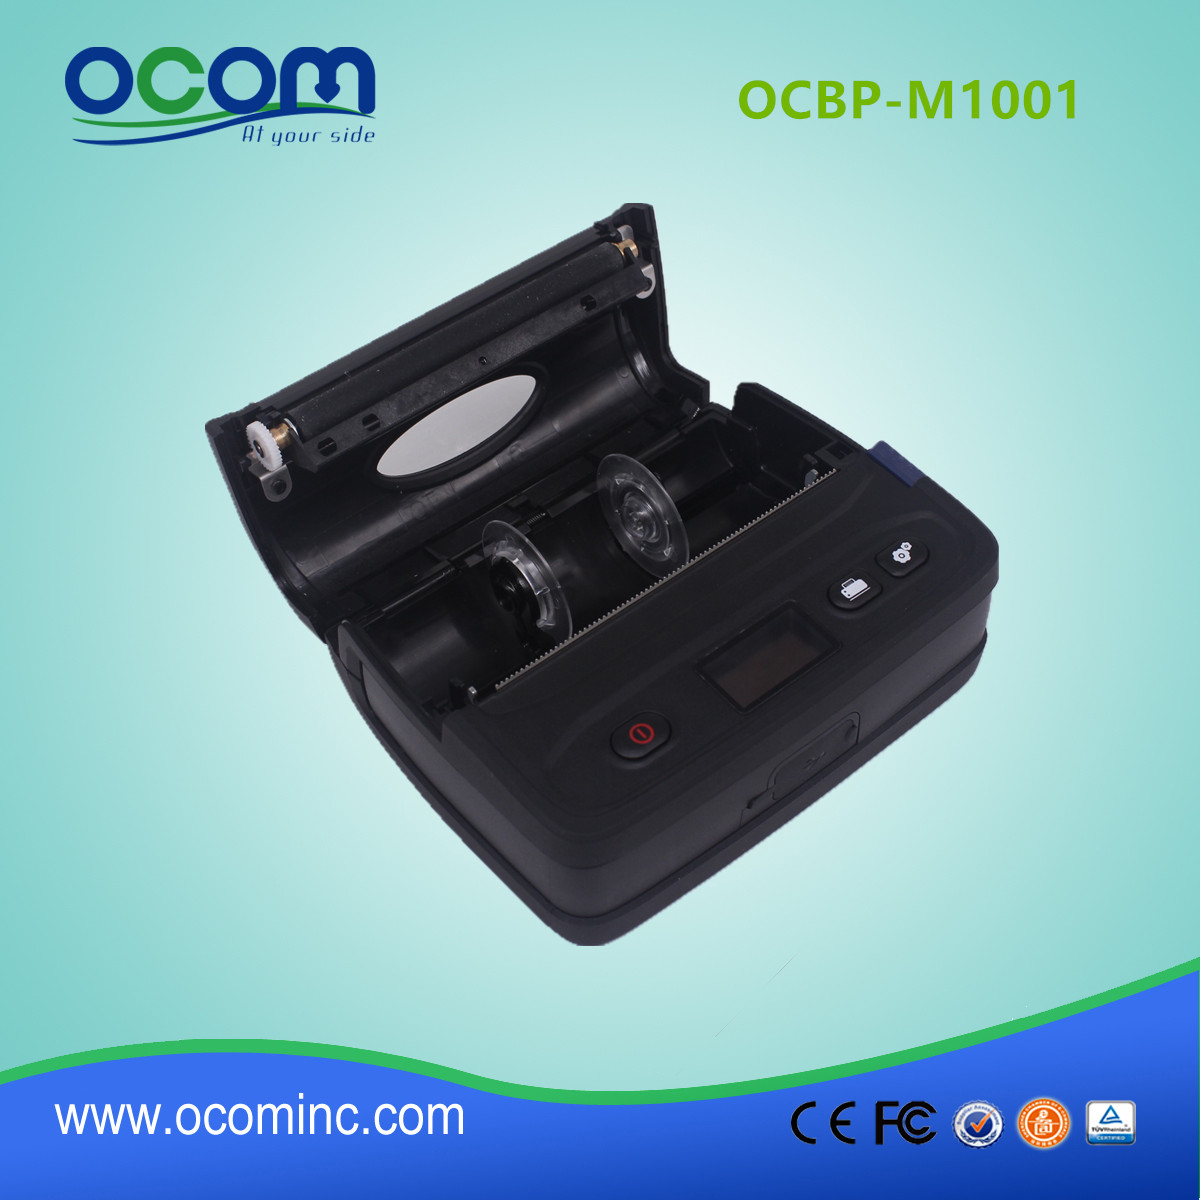 Impresora de etiquetas de código de barras Bluetooth portátil de 4 "- OCBP-M1001